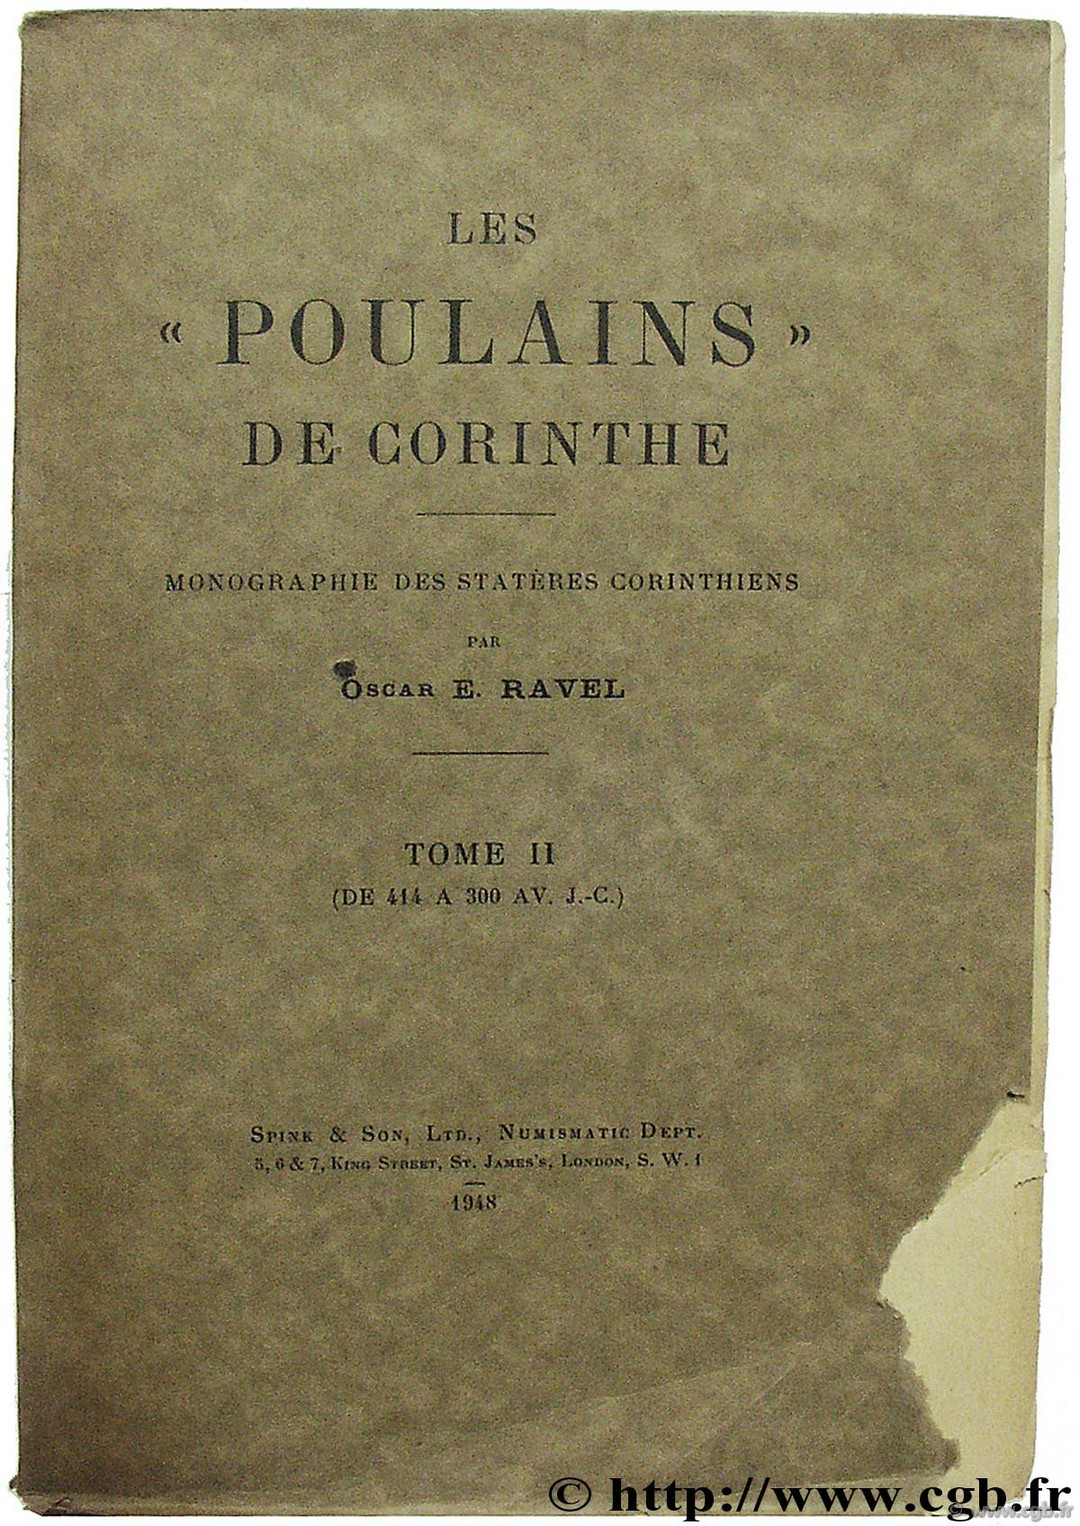 Les poulains de Corinthe, monographie des statères corinthiens RAVEL O.-E.